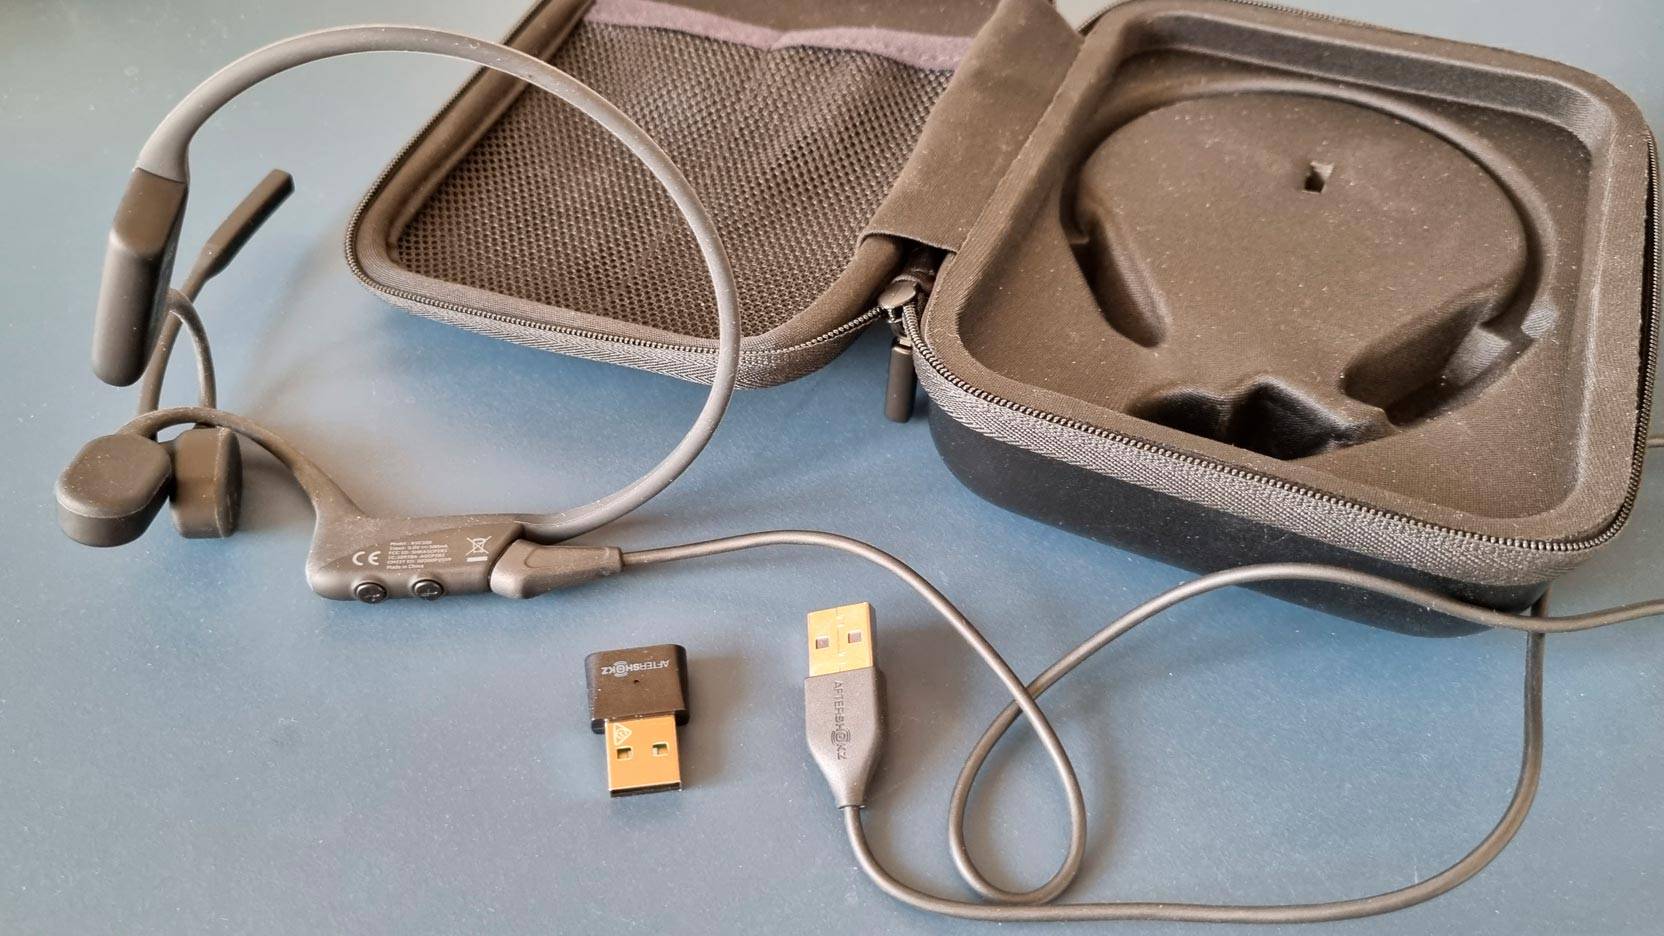 Billede fra test af bone conducting headset AfterShokz OpenComm UC taske, ladekabel og Bluetooth dongle